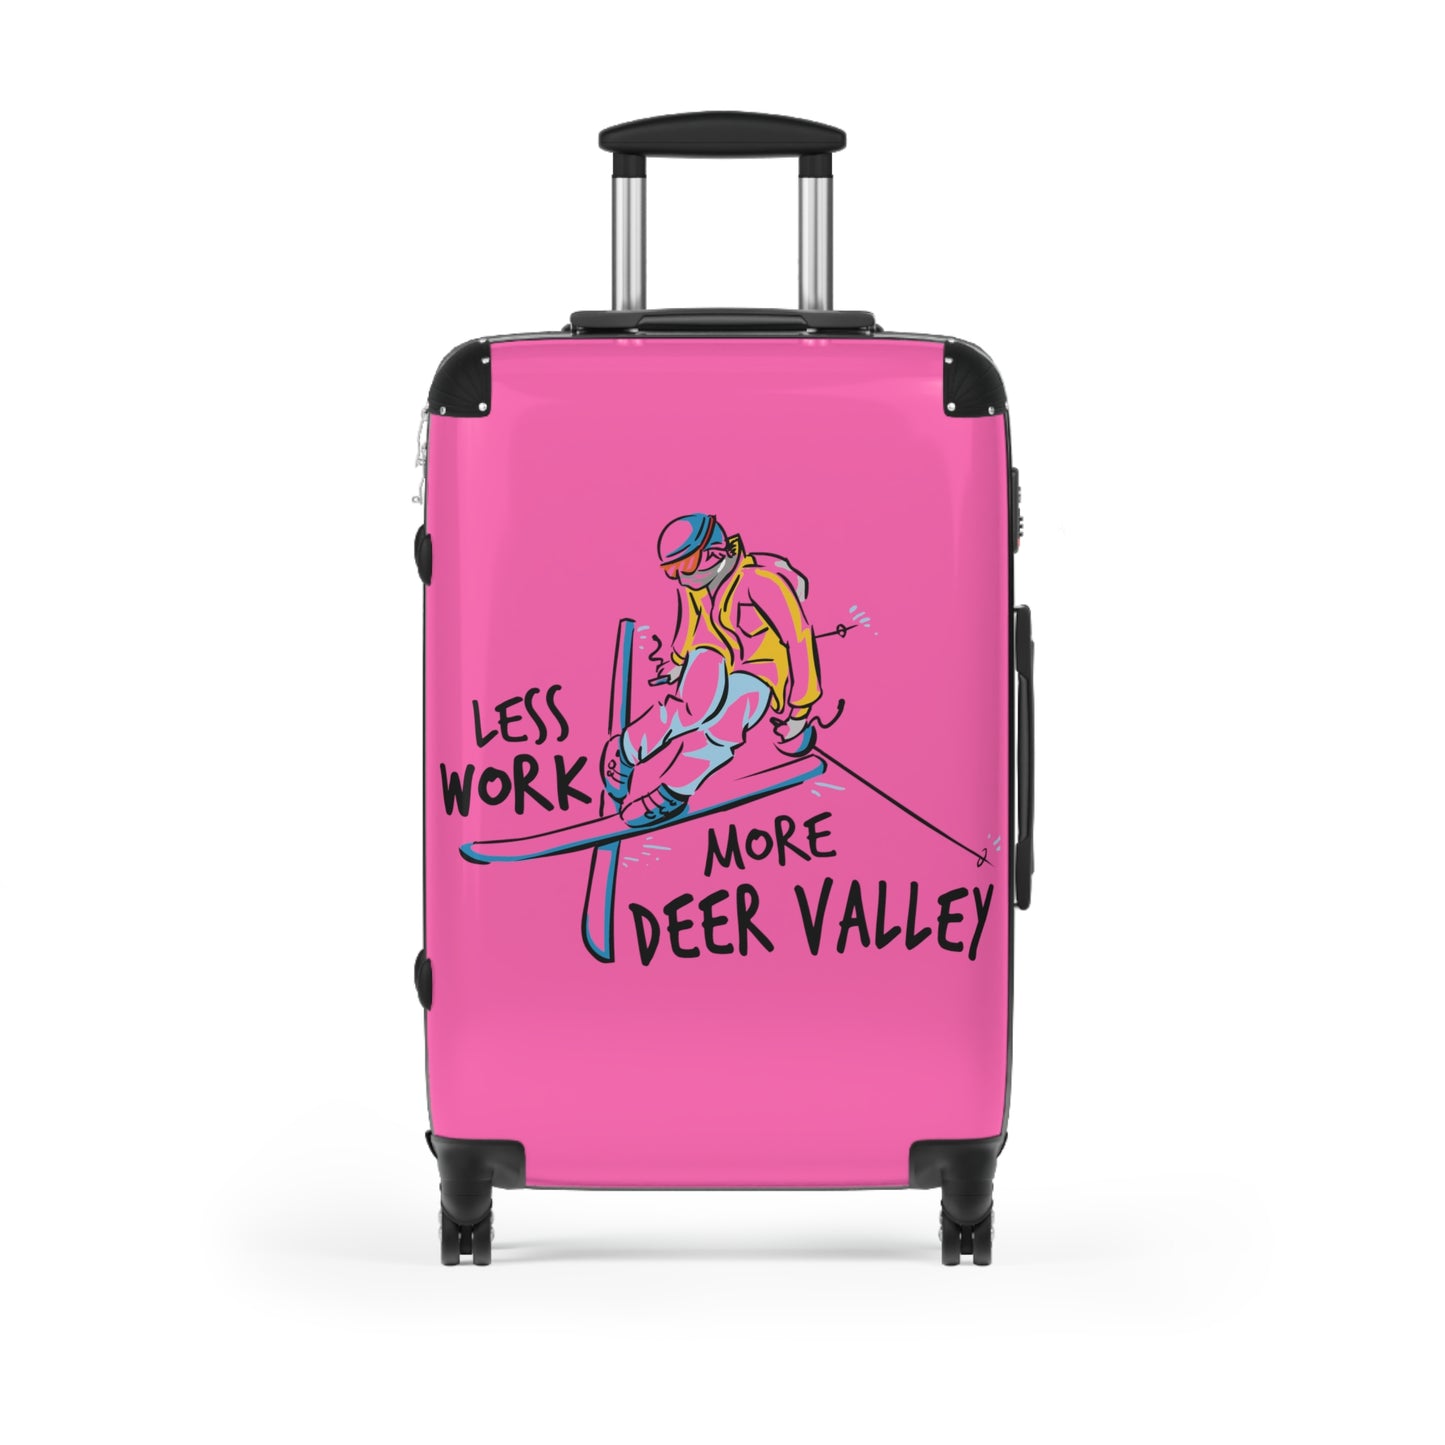 Less Work More Deer Valley Custom Luggage